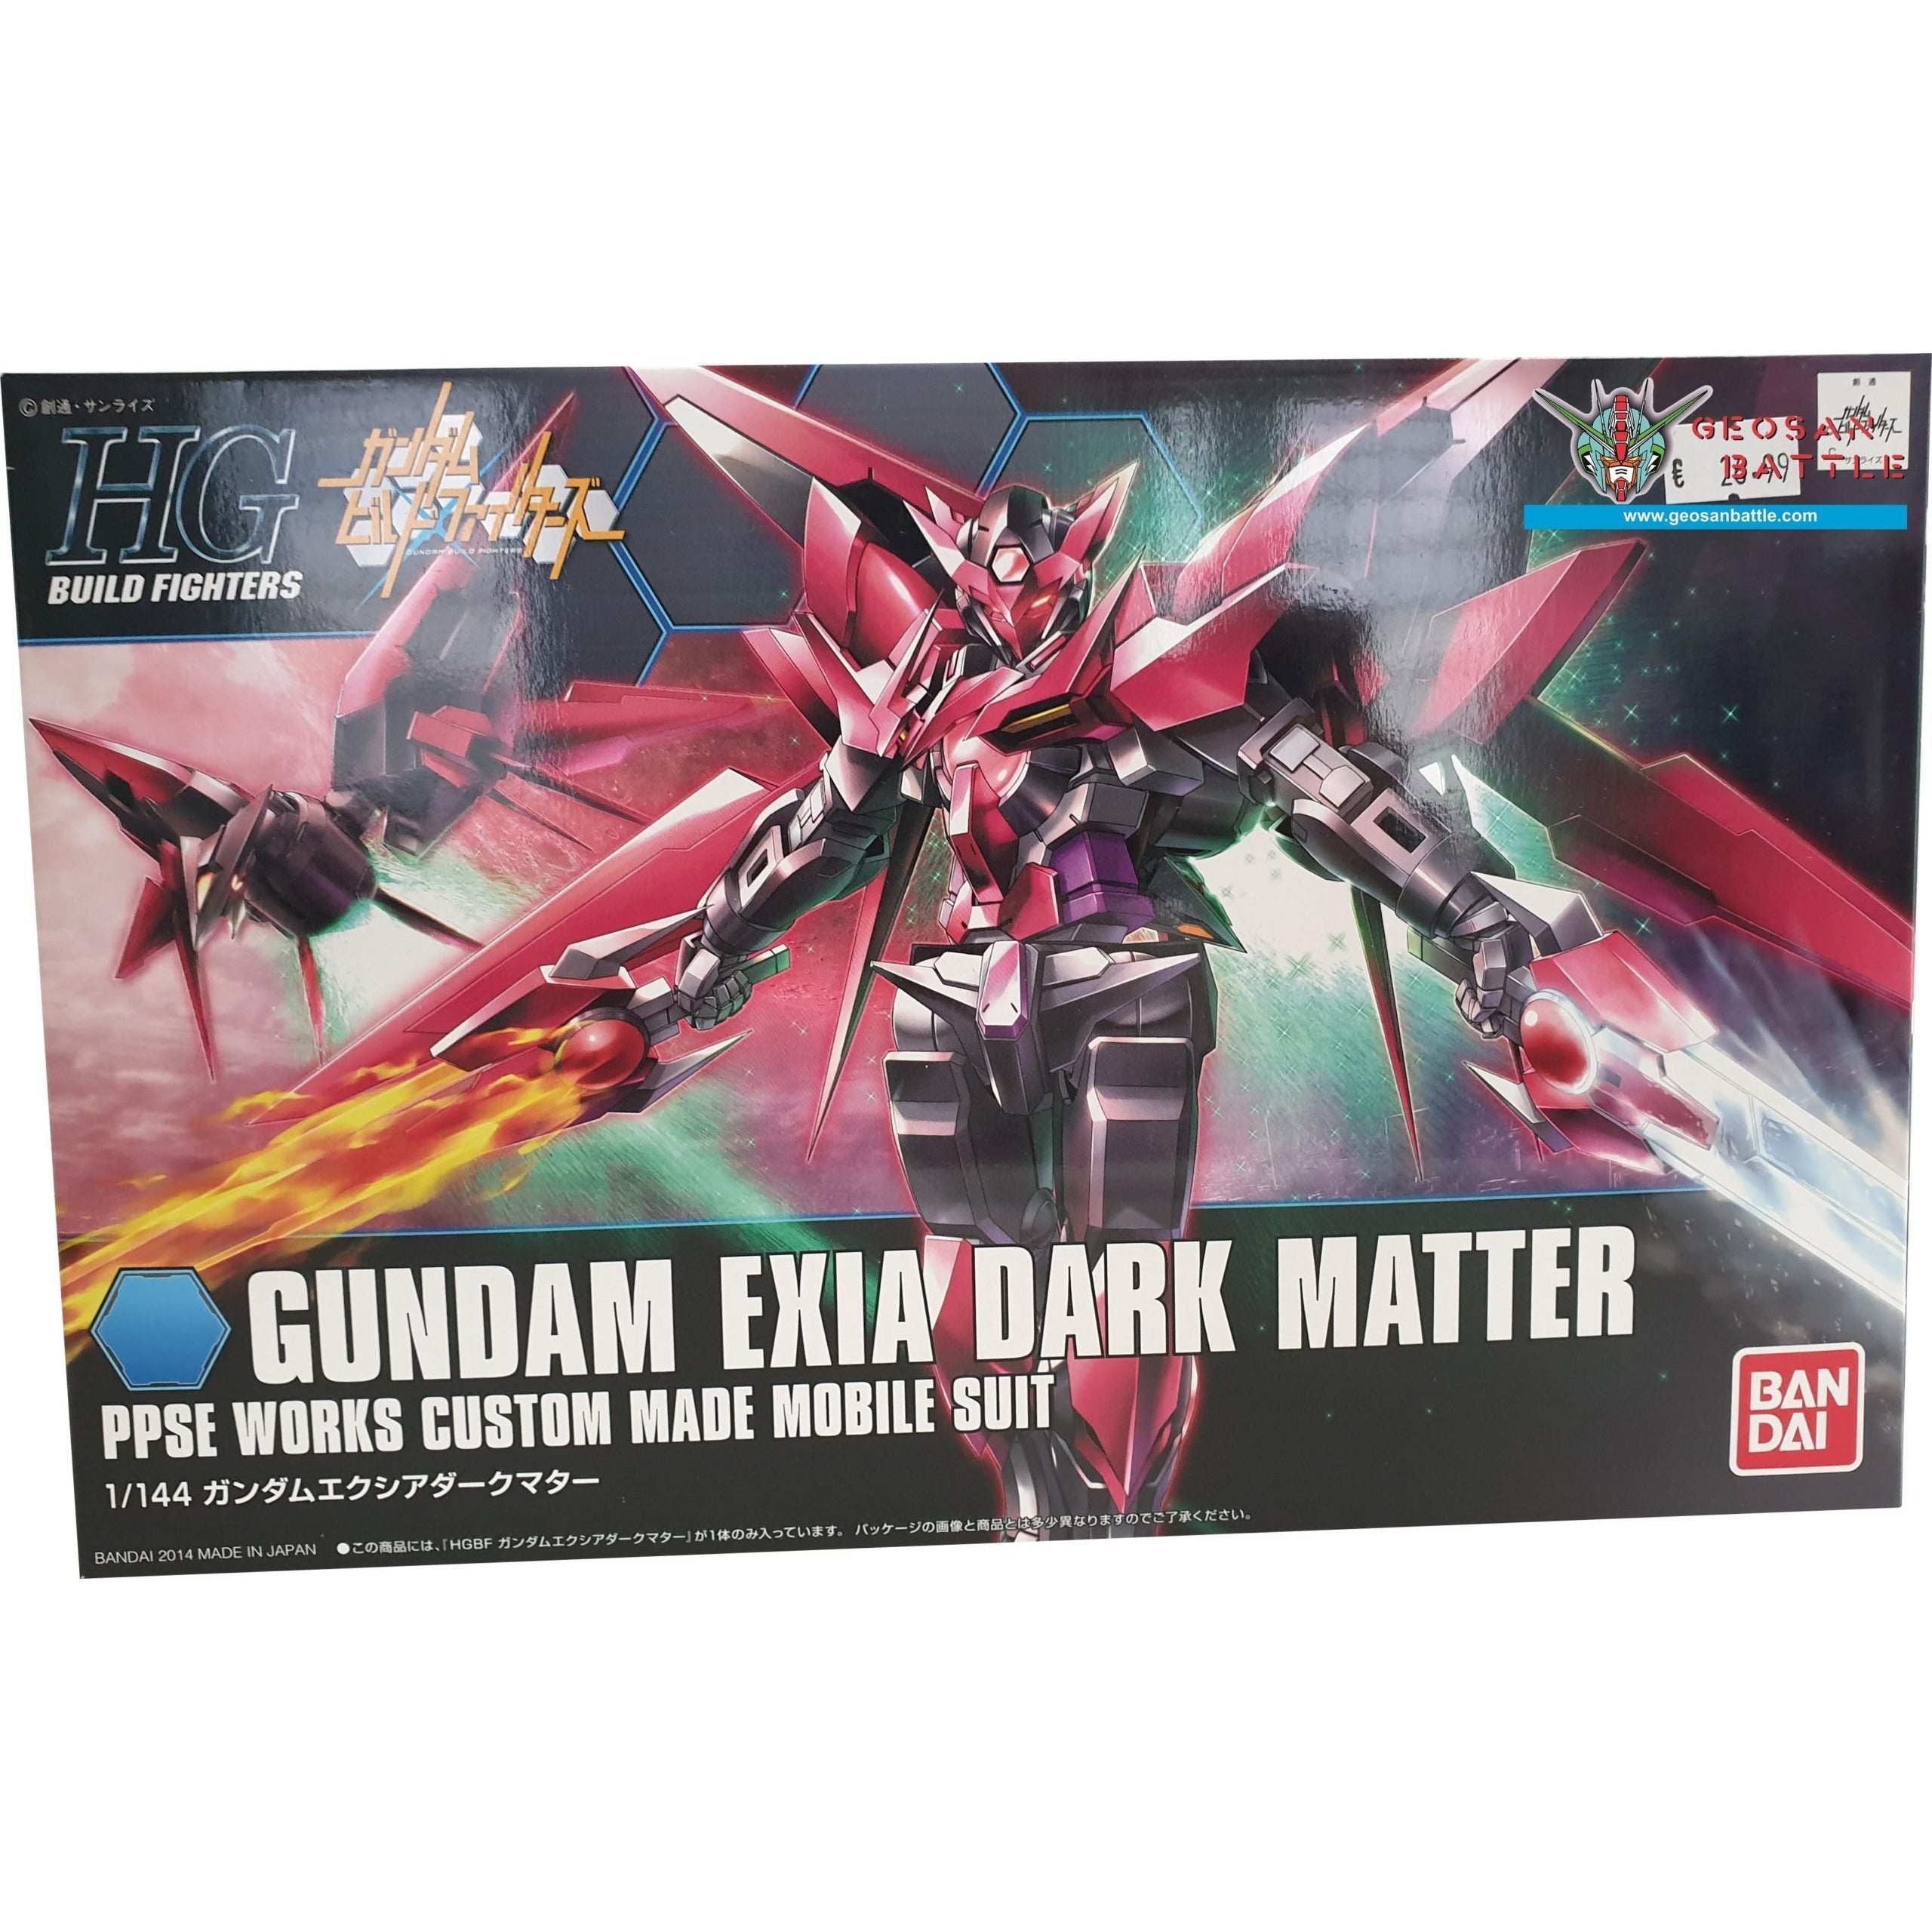 HGBF 1/144 #13 Gundam Exia Dark Matter #5058791 by Bandai